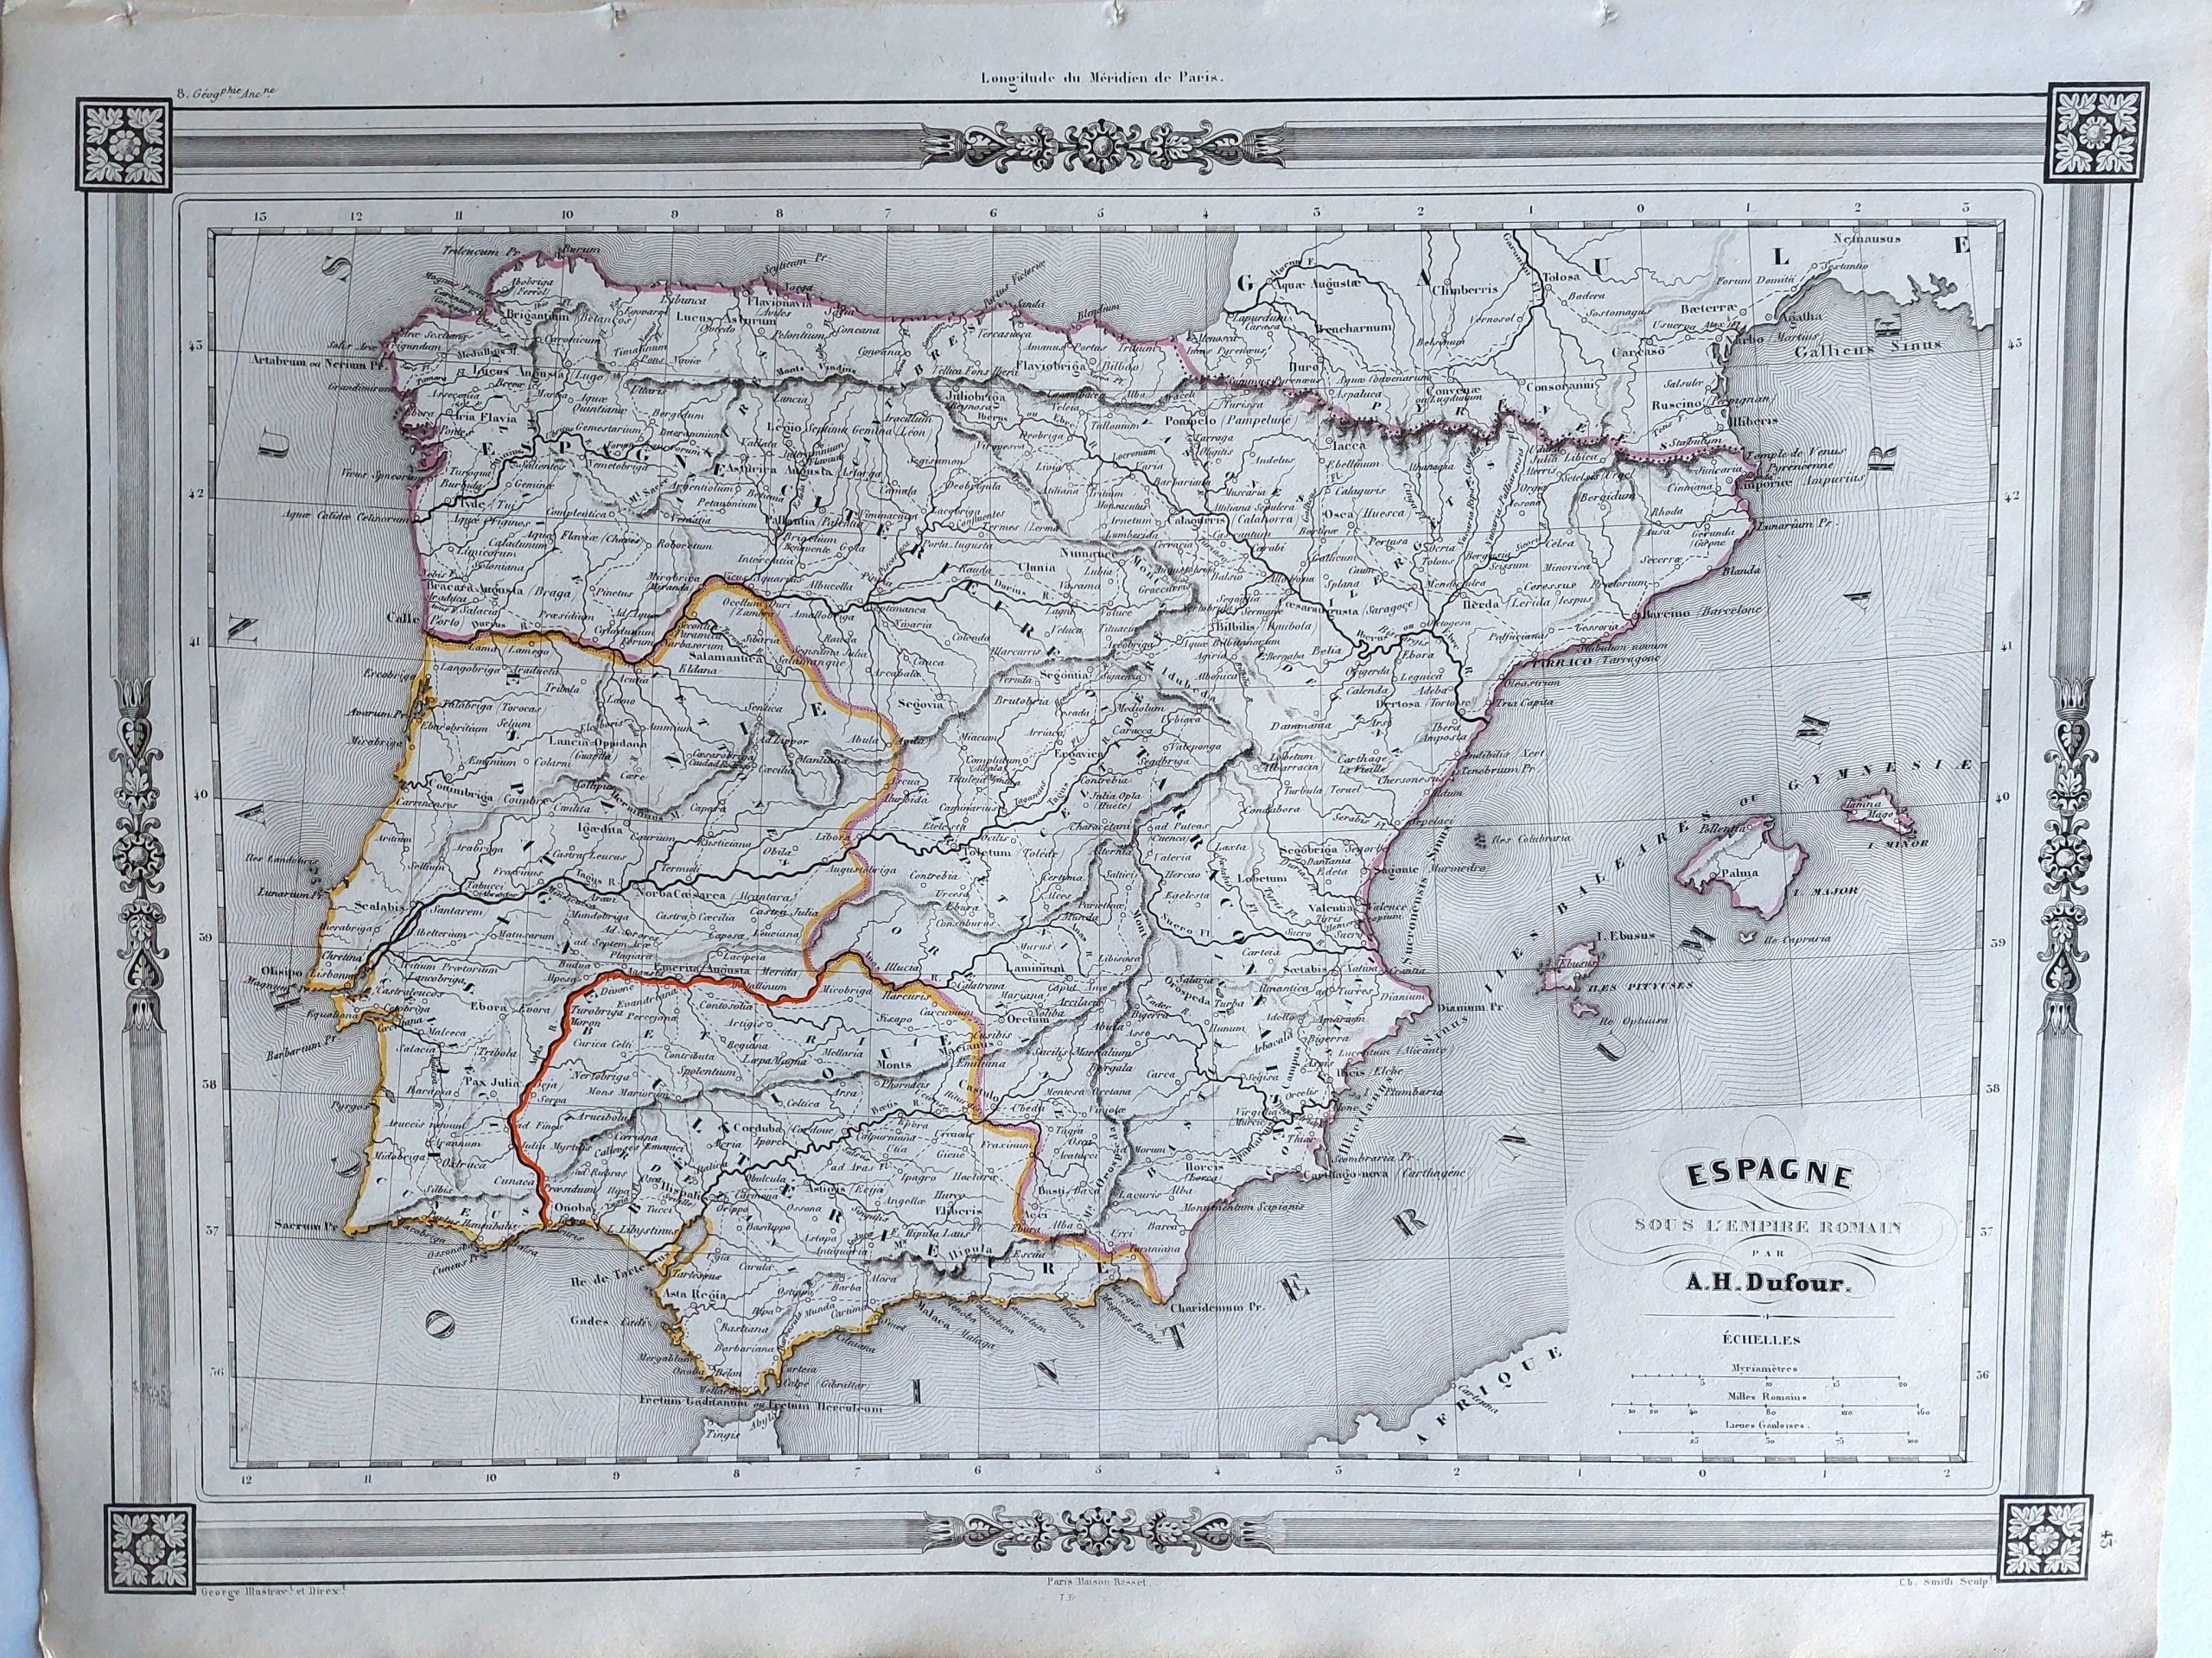 Espagne sous l’Empire Romain par A. H. Dufour.